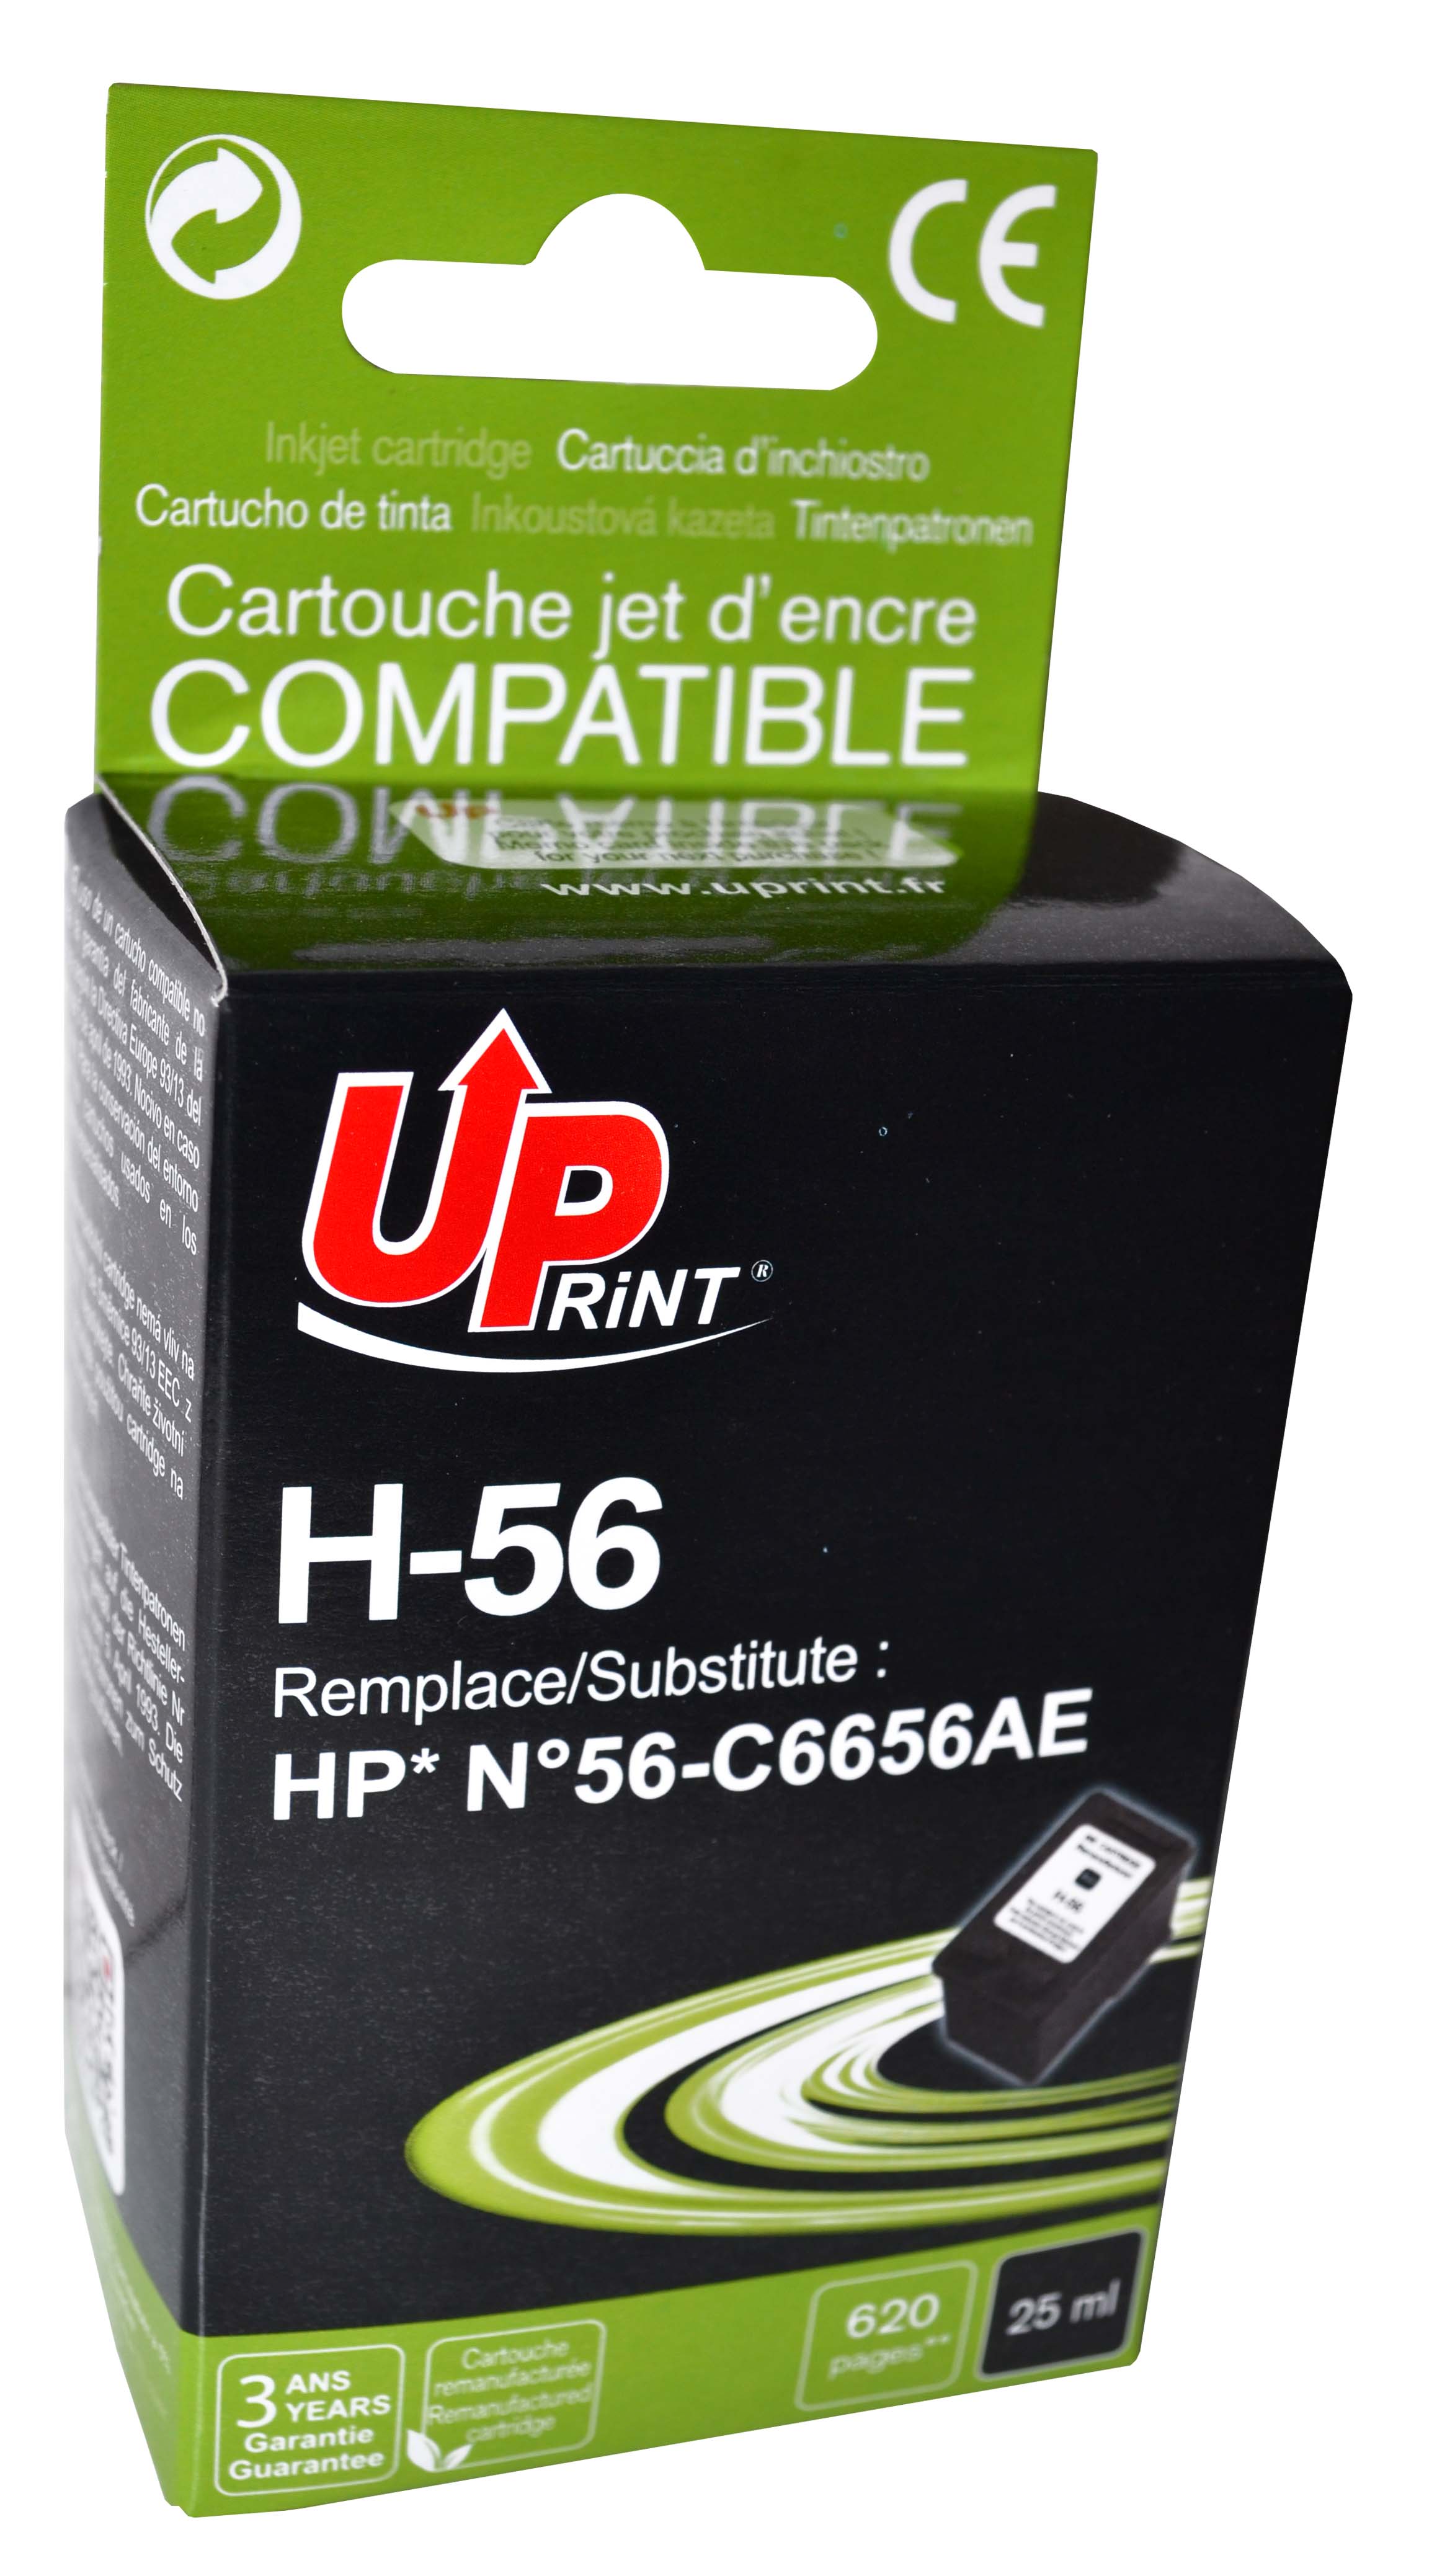 Cartouche encre UPrint compatible HP 56 noir